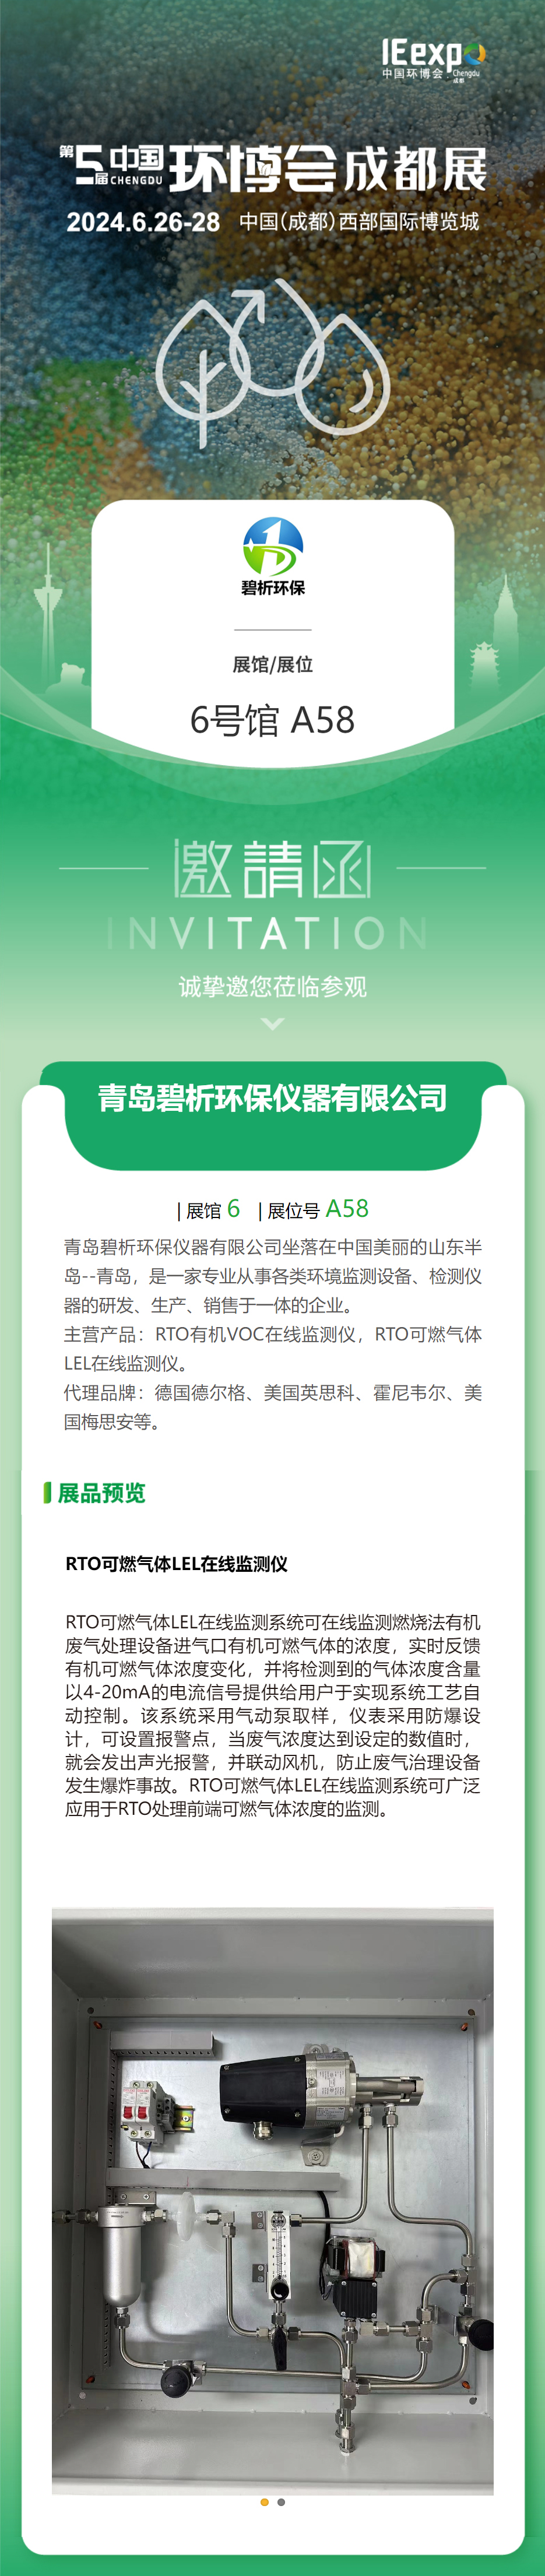 青岛碧析环保仪器有限公司6月26-28日 与您相约中国西部国际博览城中国环博会(图1)